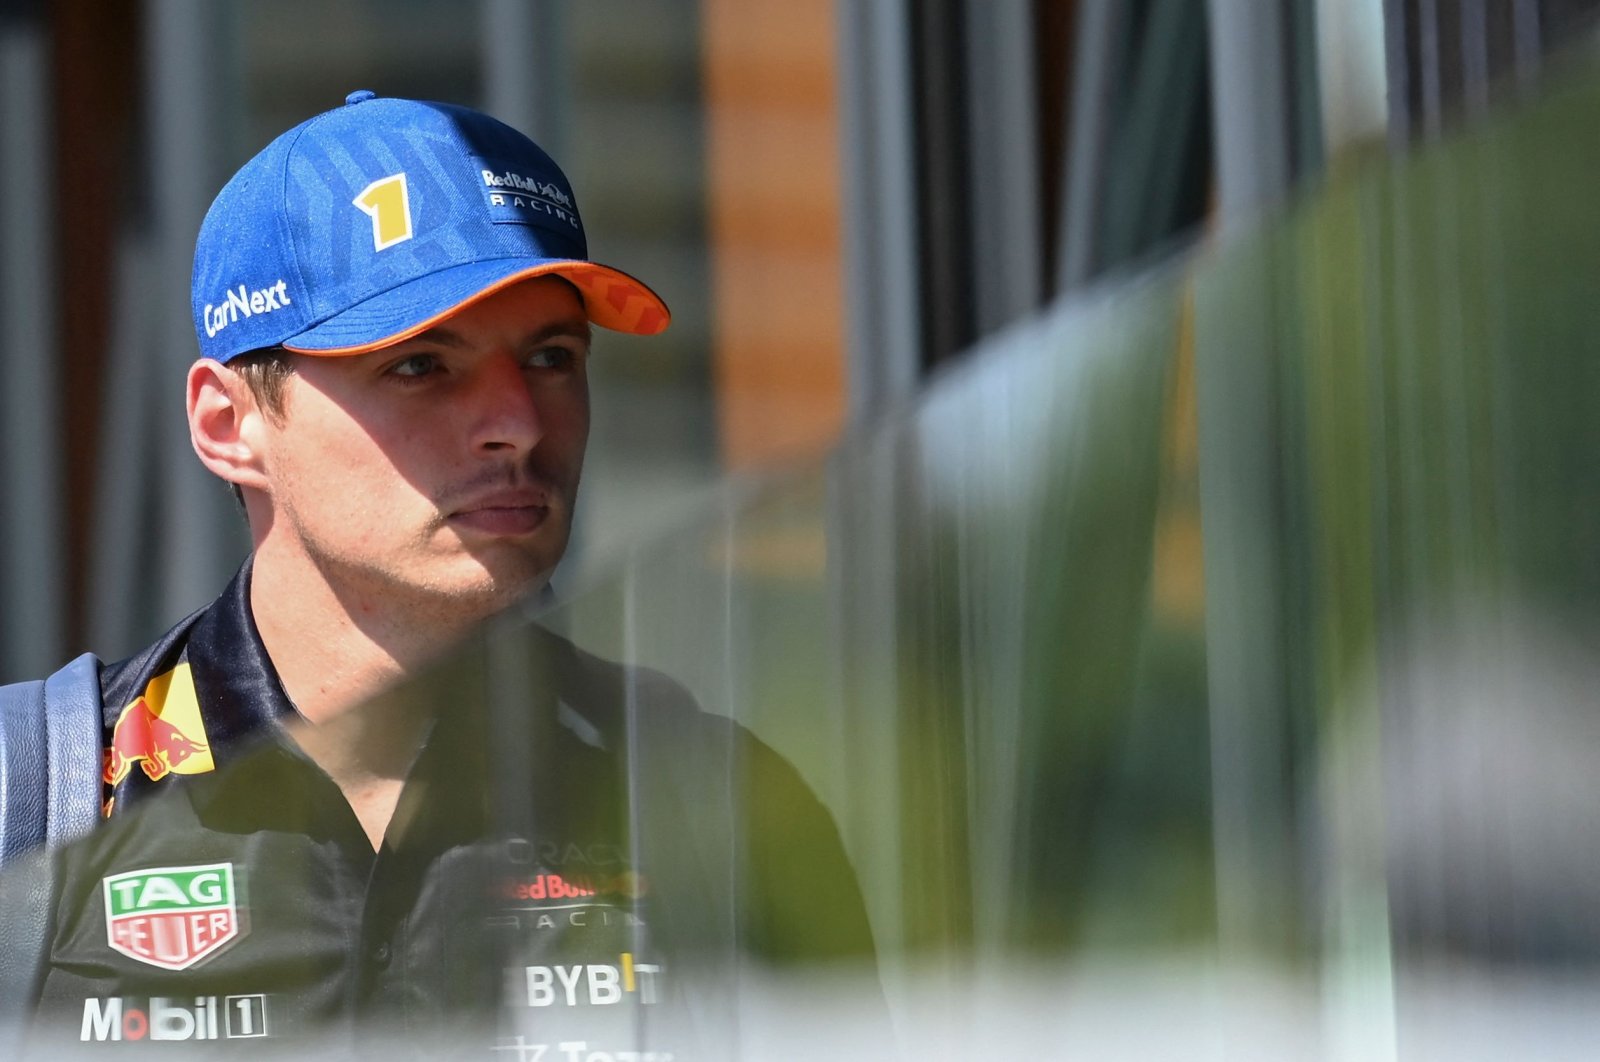 Juara dunia Verstappen berusaha mempererat cengkeraman gelar di Spa